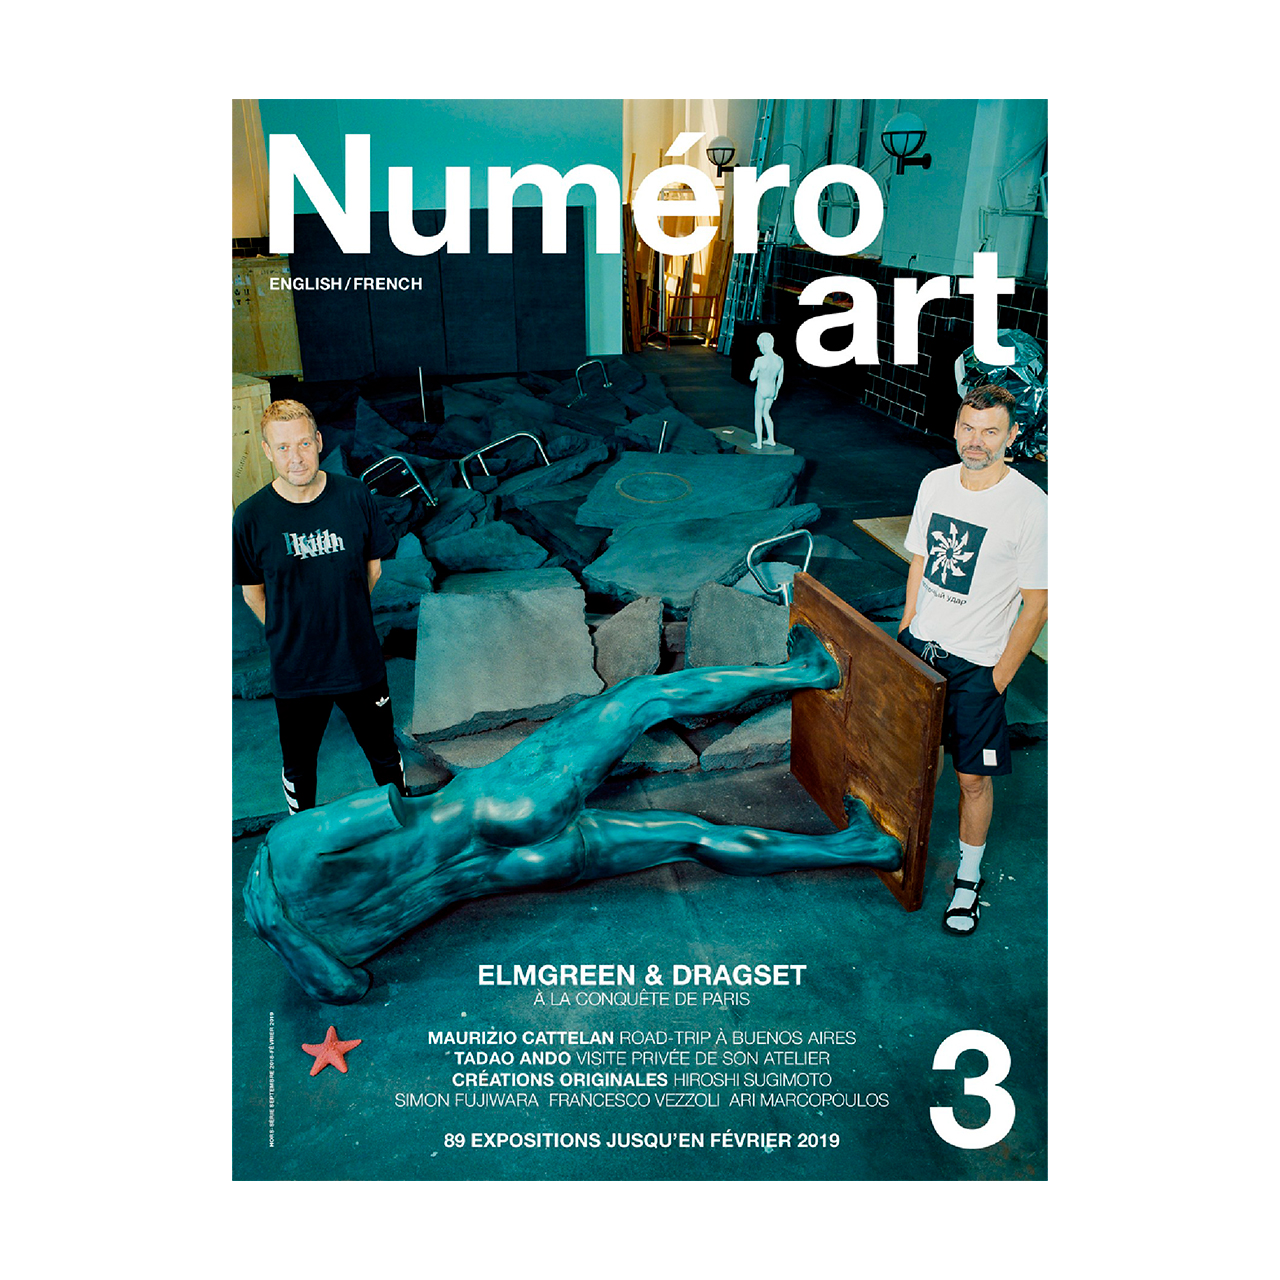 Numéro art, nouveau magazine dédié à l'art contemporain